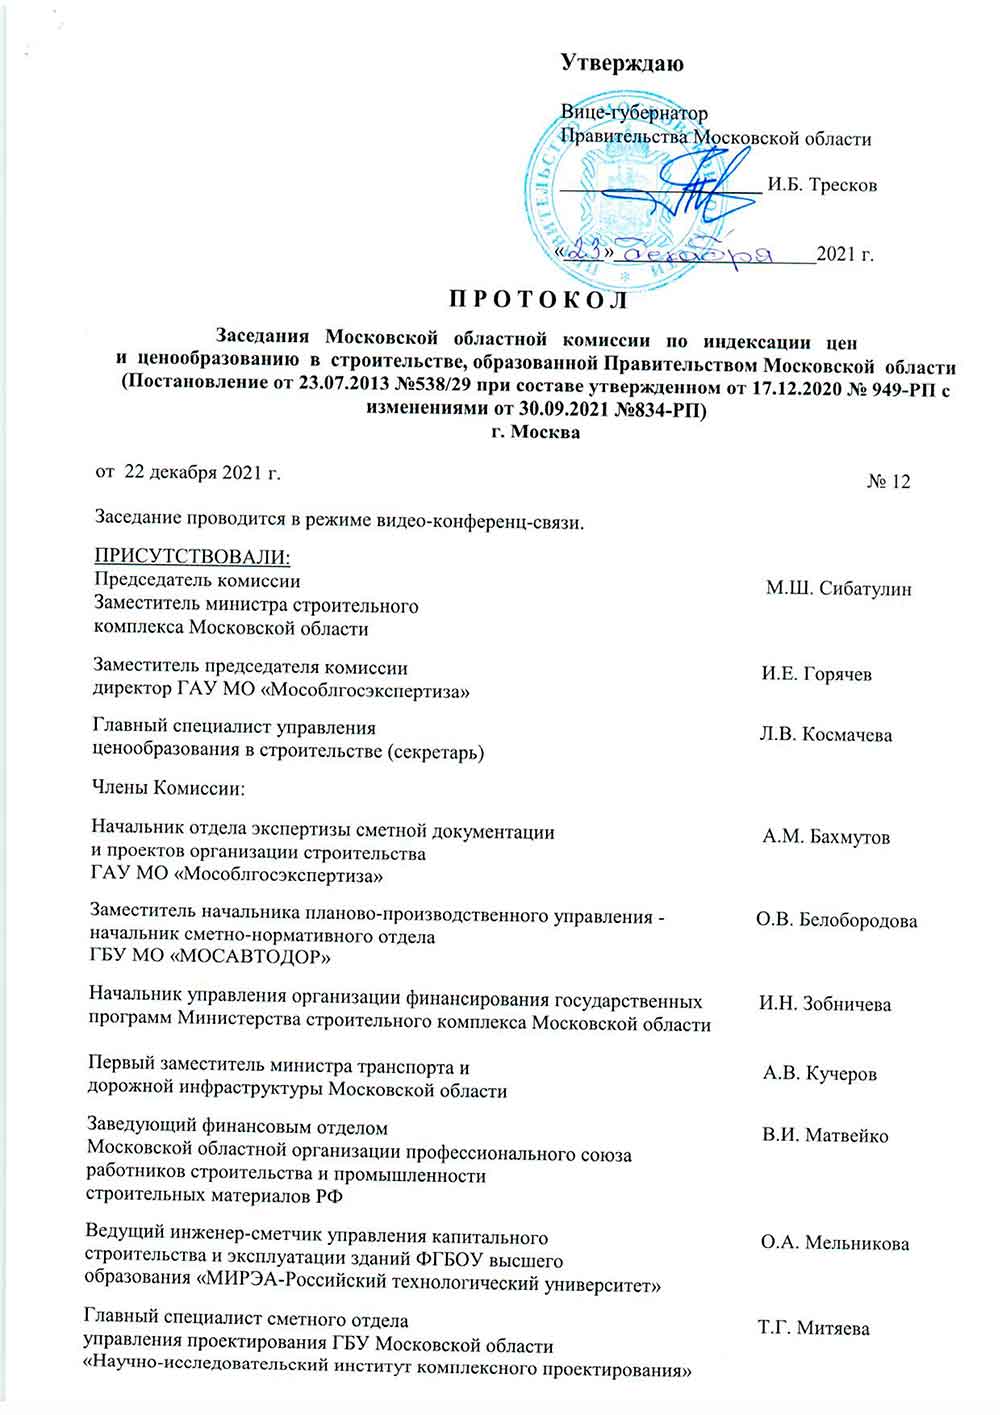 Протокол Мособлгосэкспертизы №12 от 22.12.2021 года